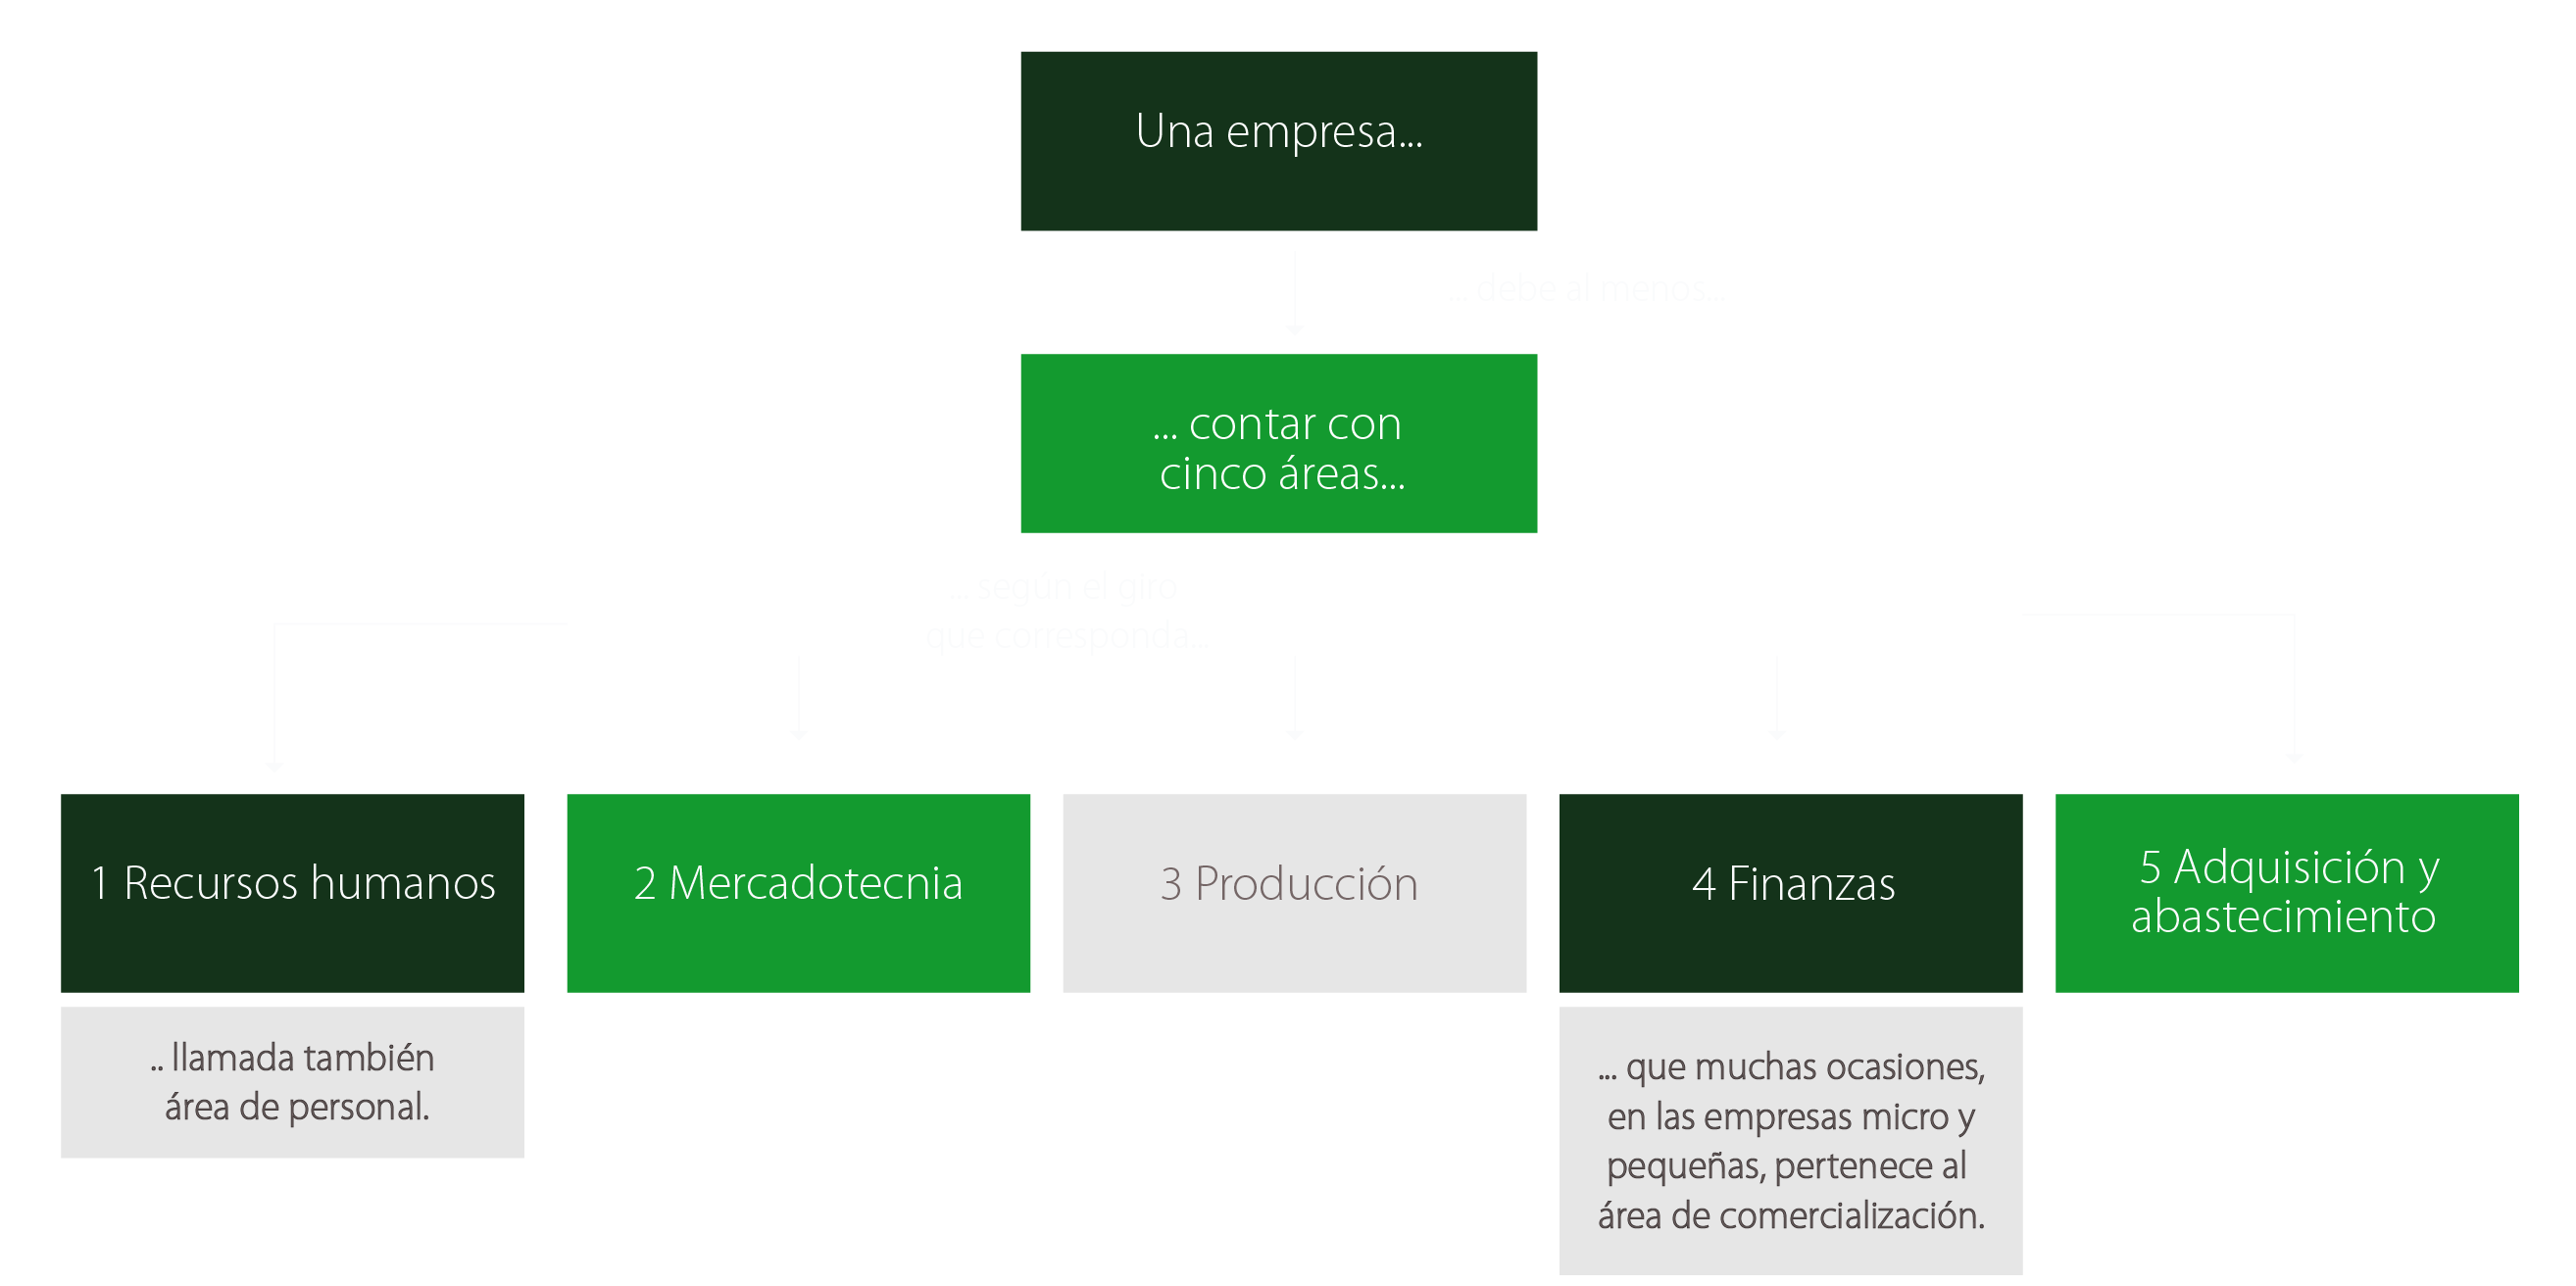 Mapa conceptual mostrando las cinco áreas que una empresa debe tener para lograr sus objetivos